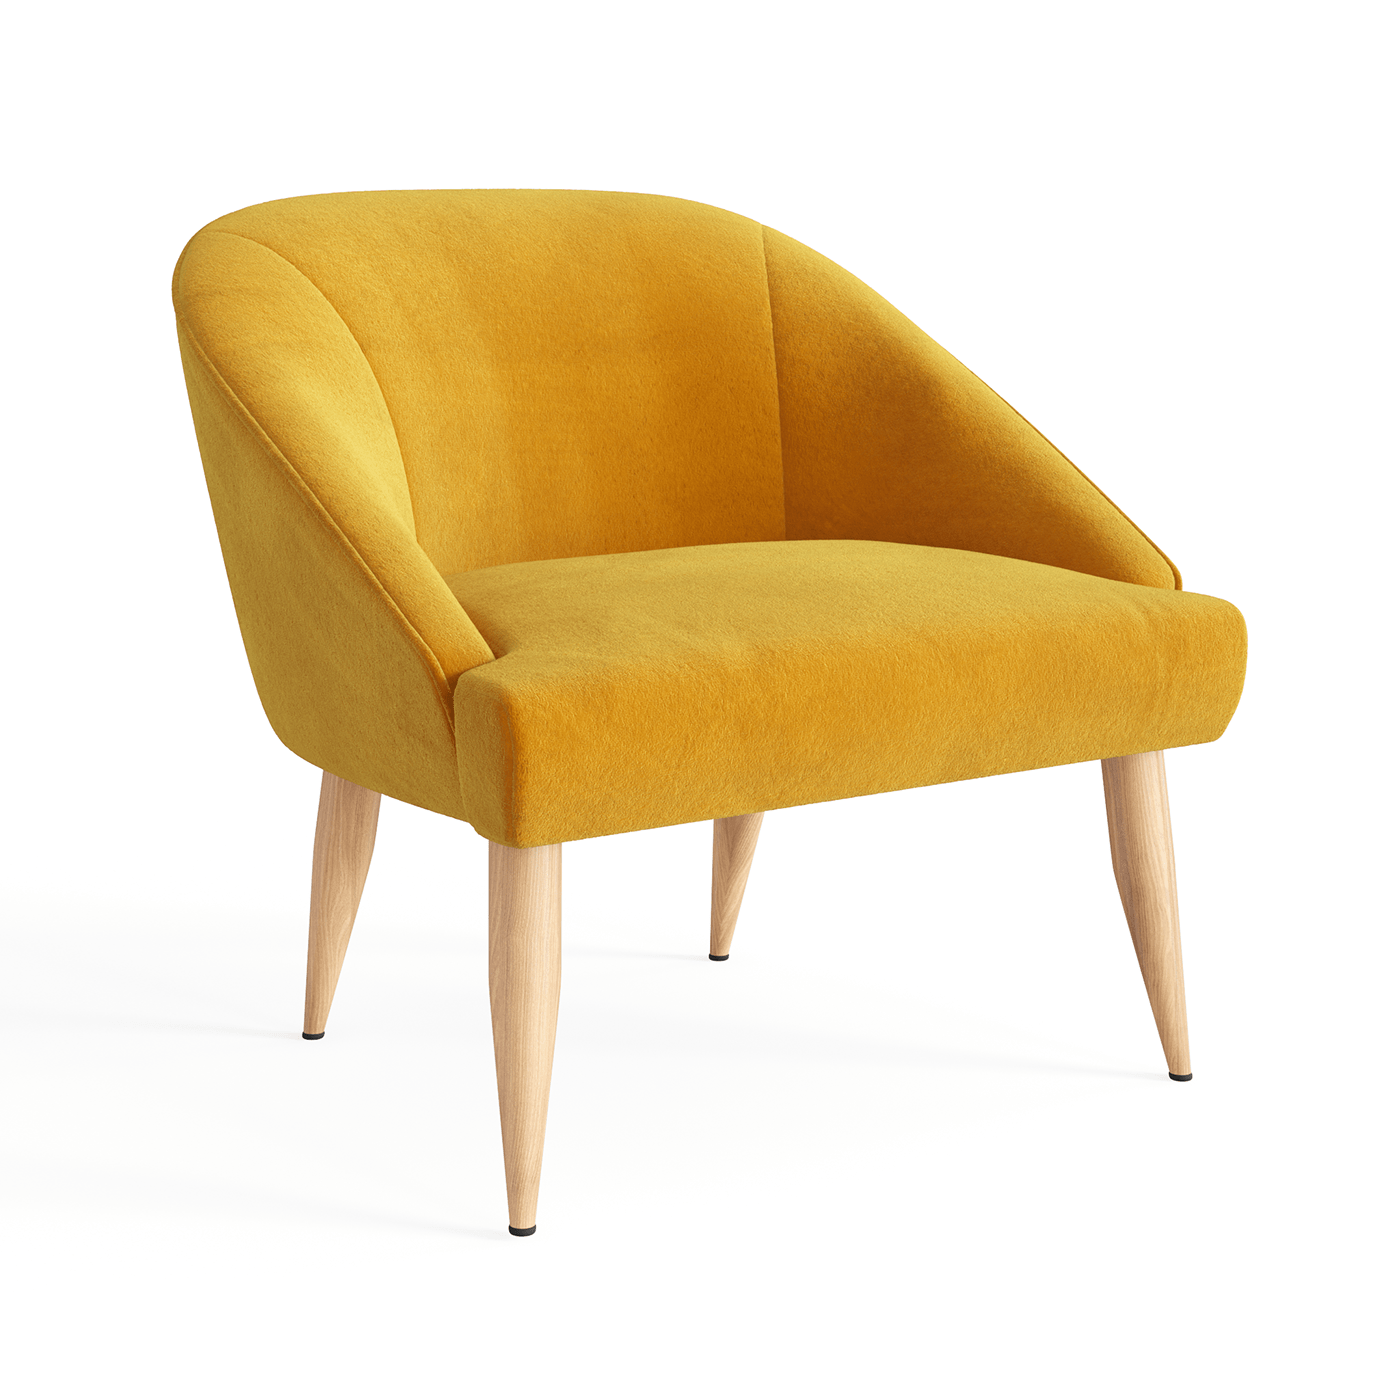 3D 3D Visualization 3dmodel armchair furniture Gio Ponti gold velvet Small Italian velvet vintage